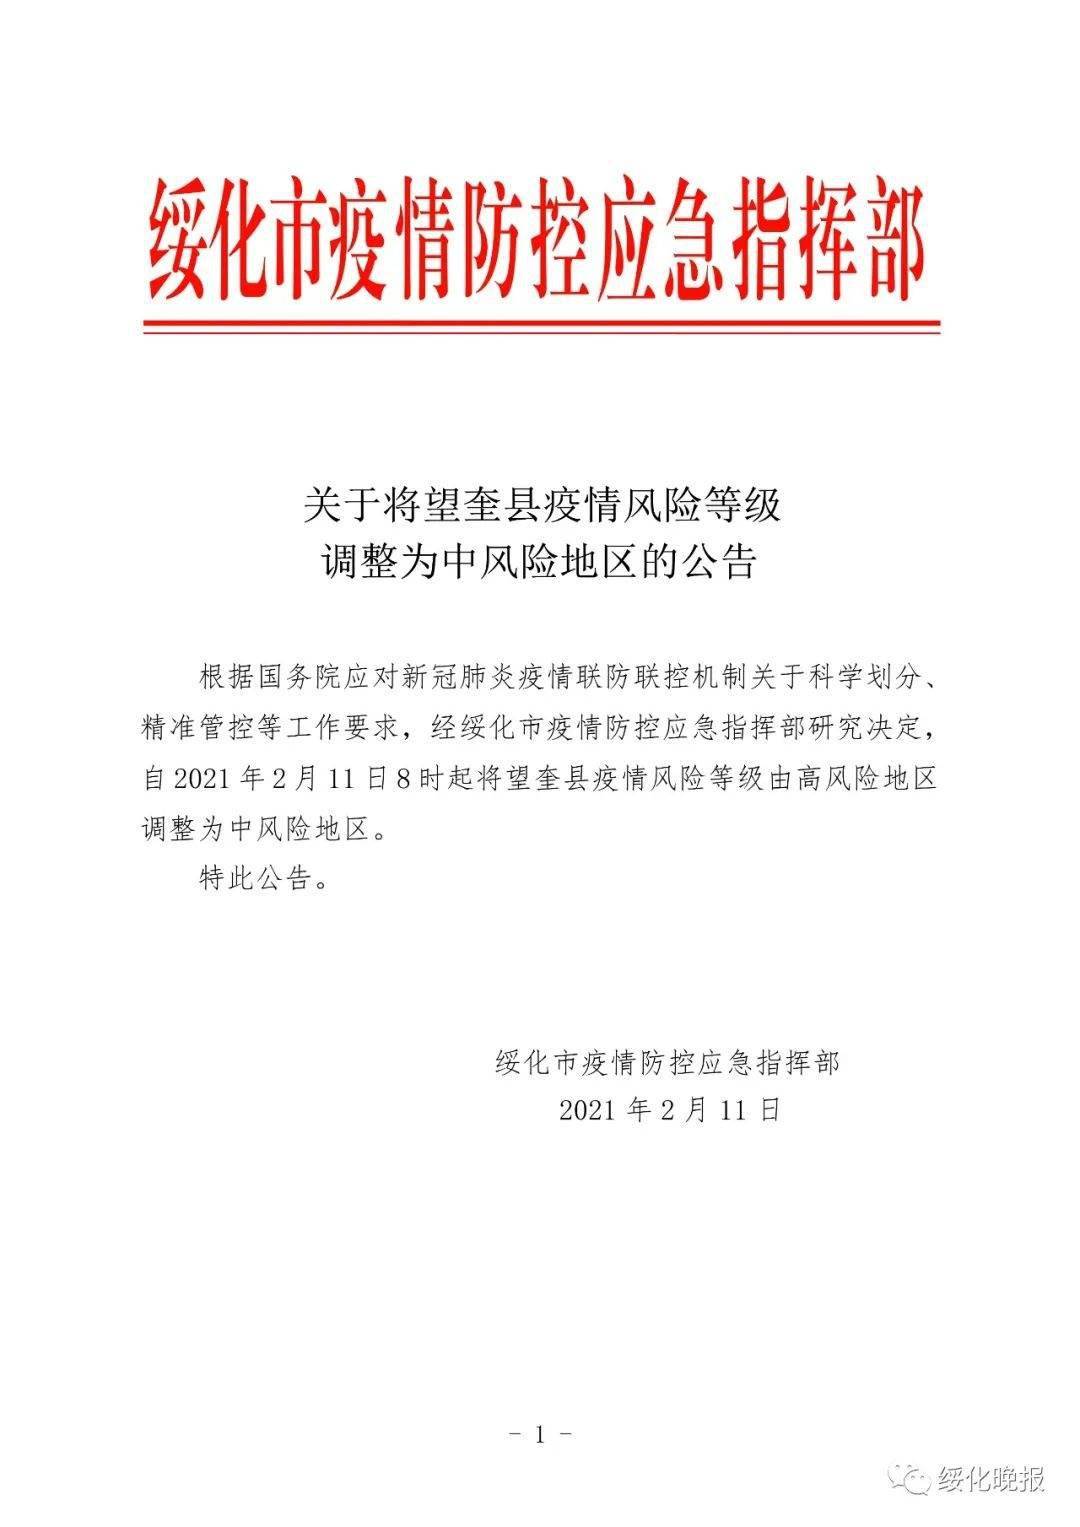 关于将望奎县疫情风险等级调整为中风险地区的公告